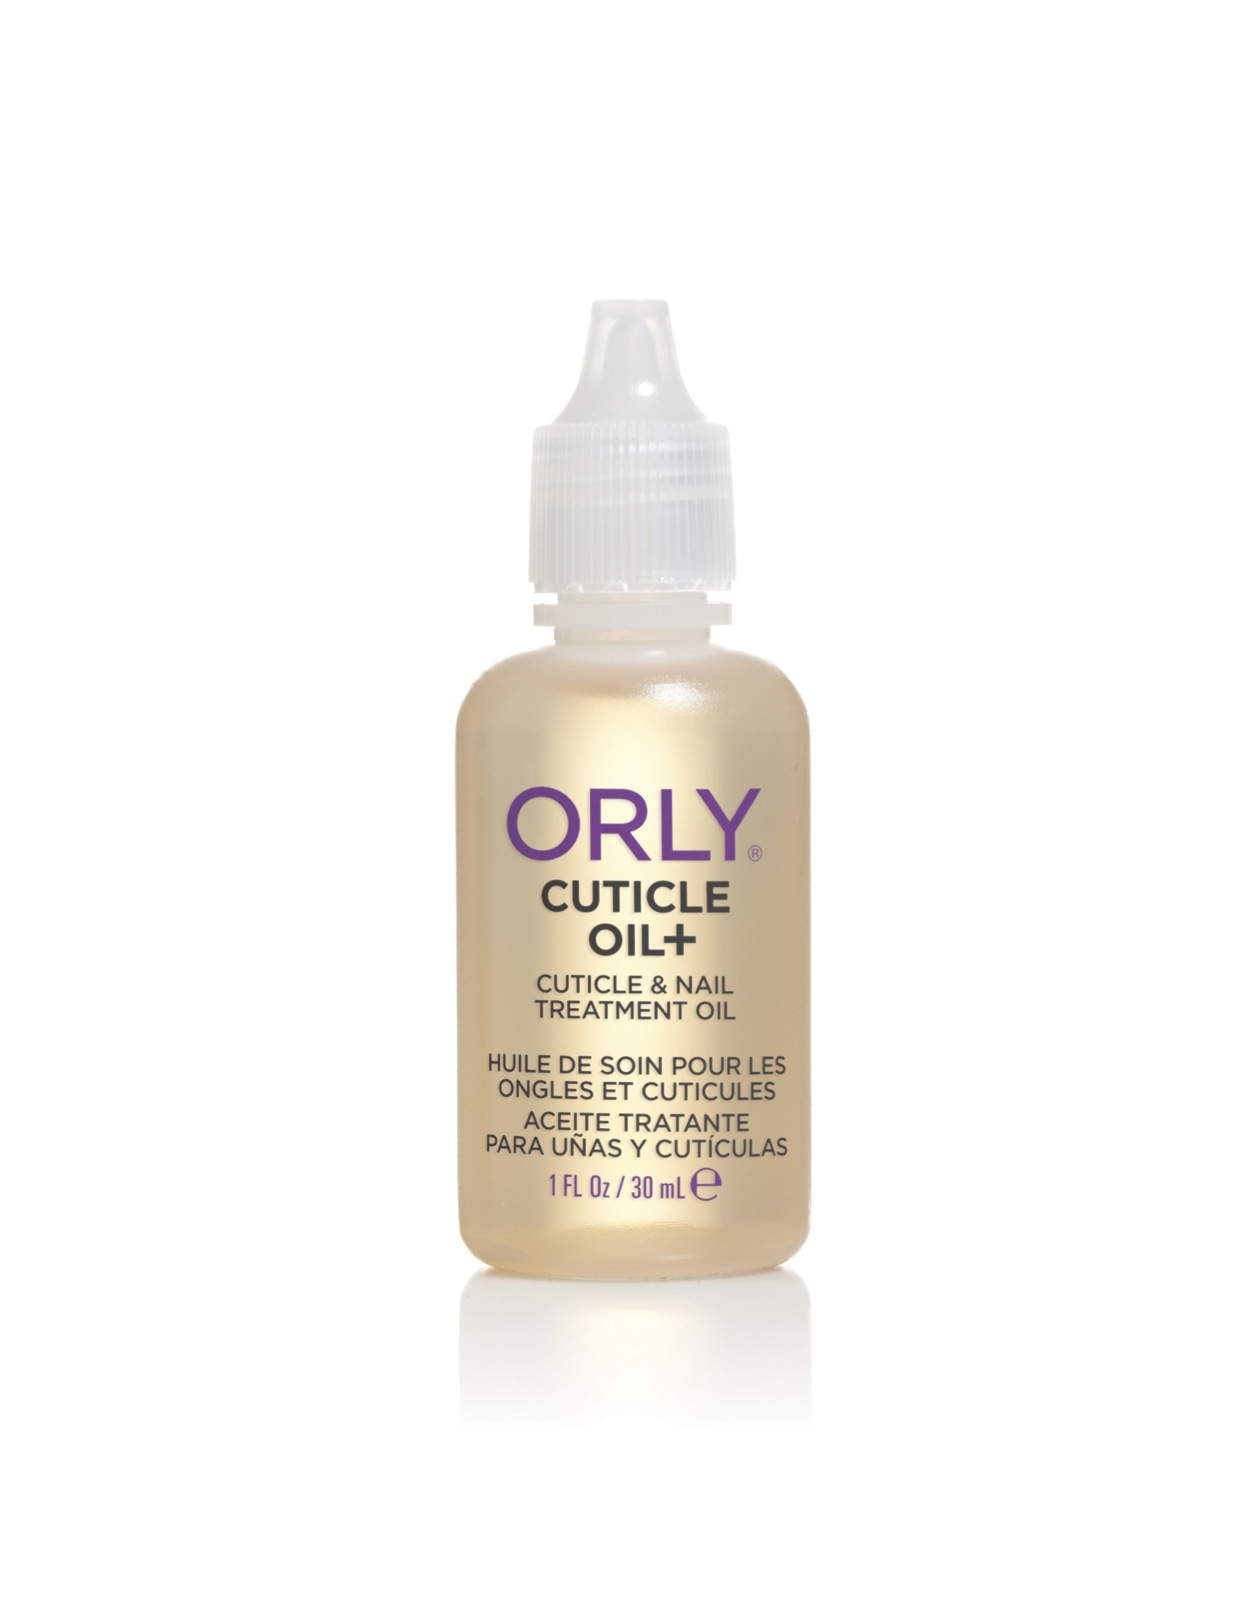 El aceite de cutículas ayuda a mantener las uñas fuertes y sanas. Este de ORLY cuesta 13,75 euros.